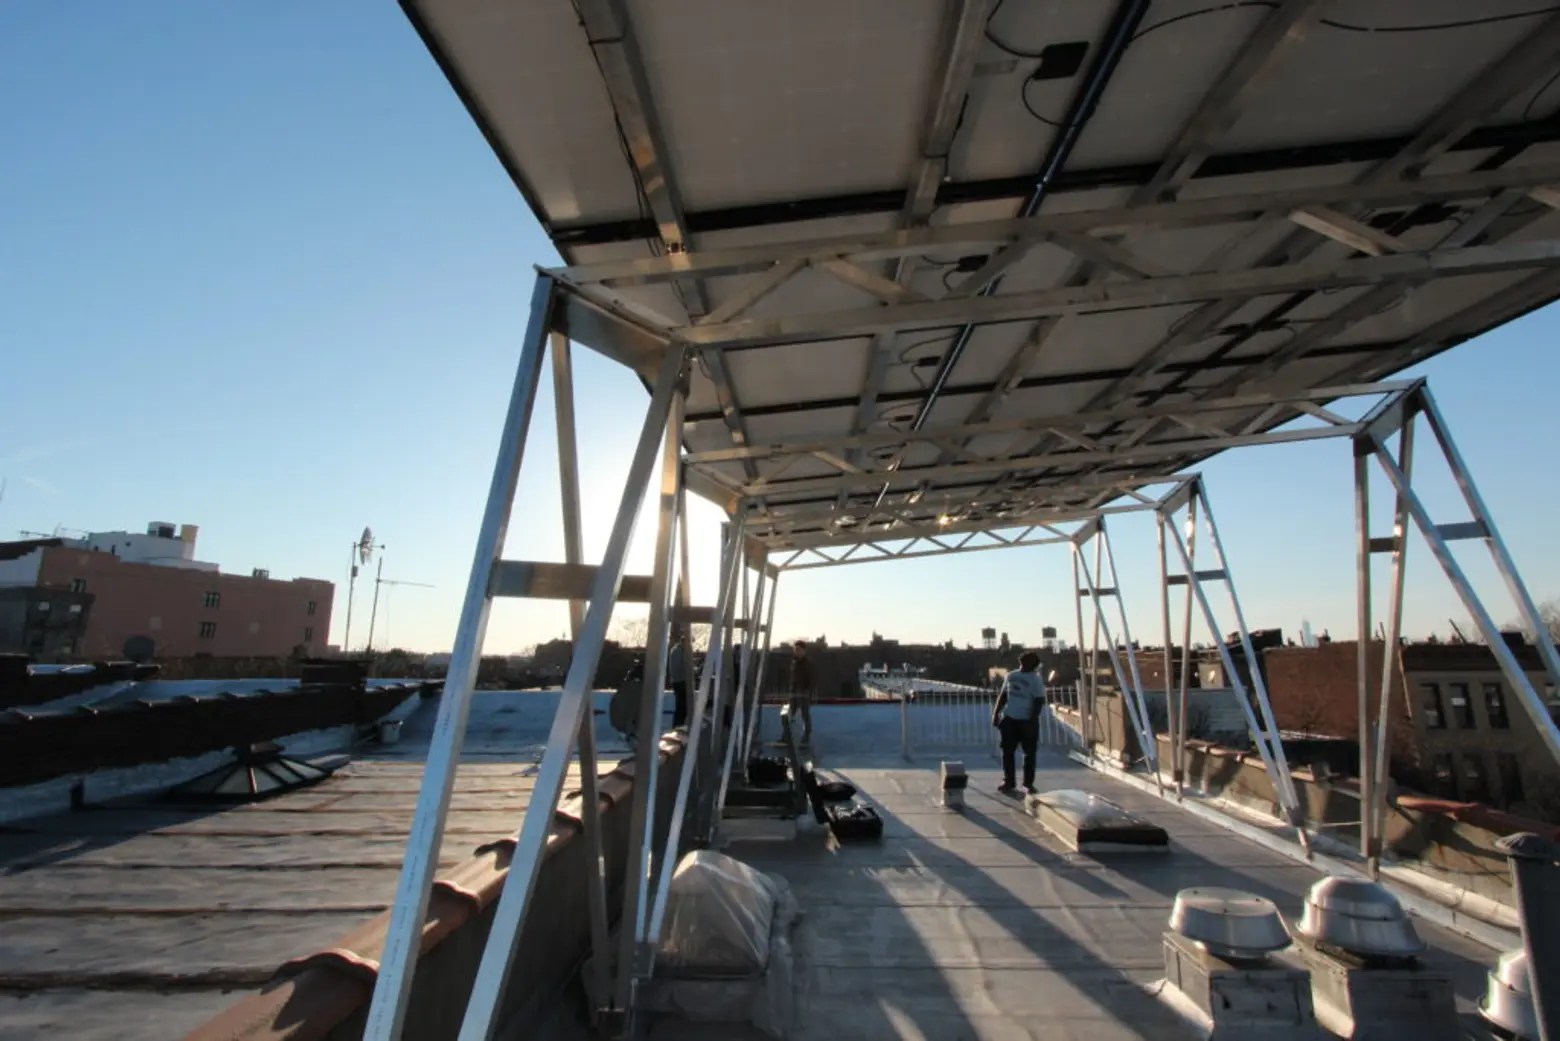 Solar canopy by brooklyn solarworks and situ studio